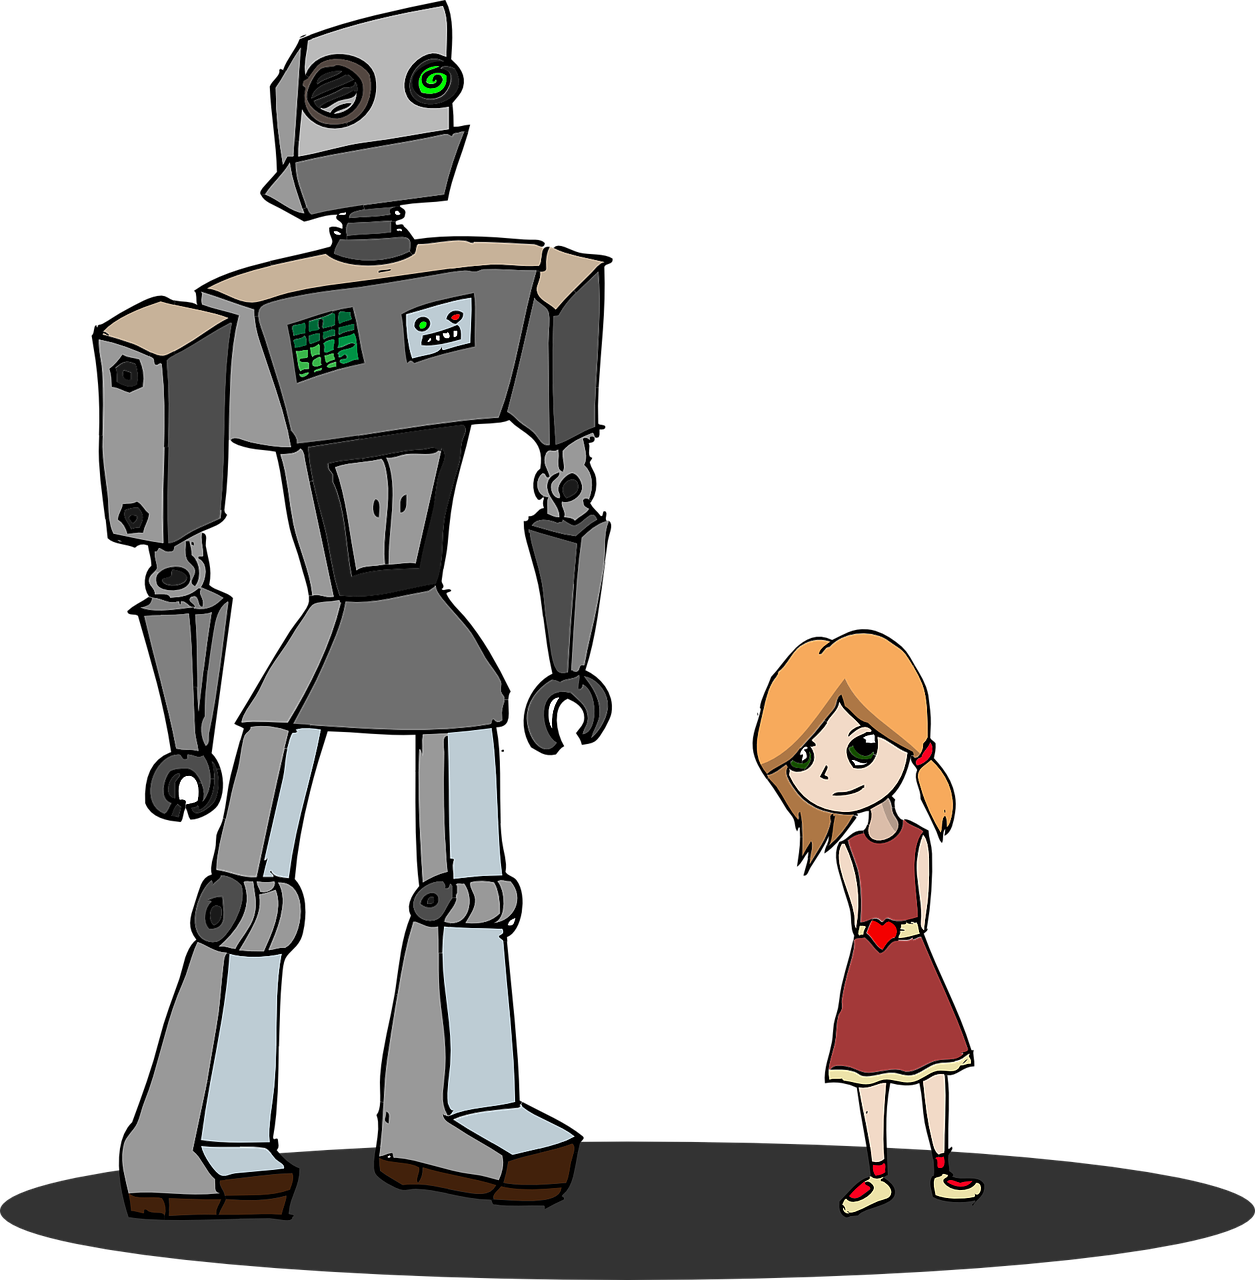 Robot_and_Girl